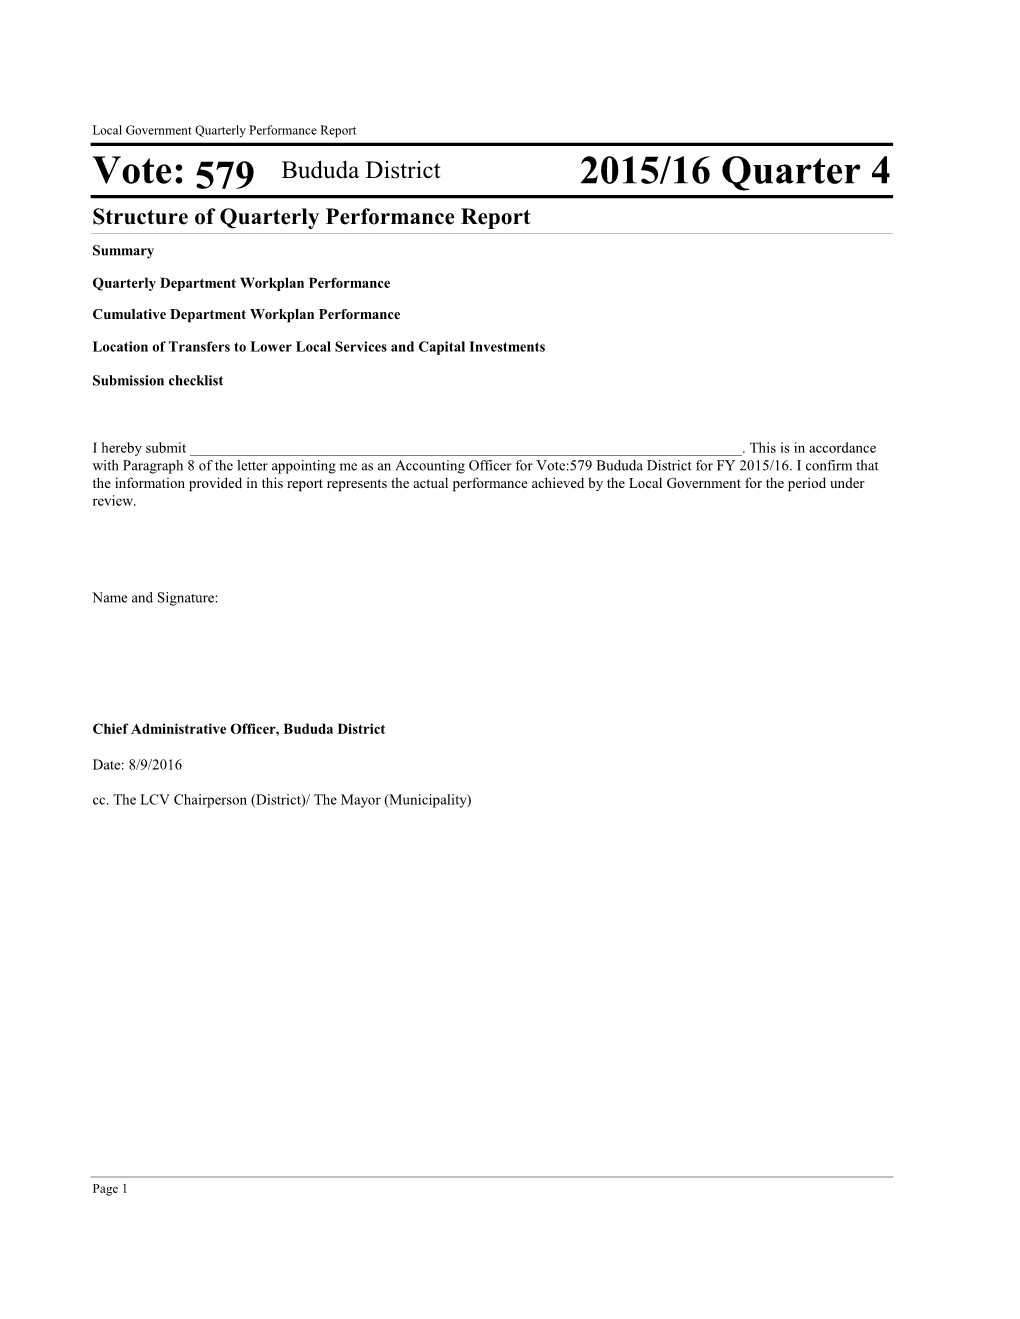 Vote: 579 2015/16 Quarter 4